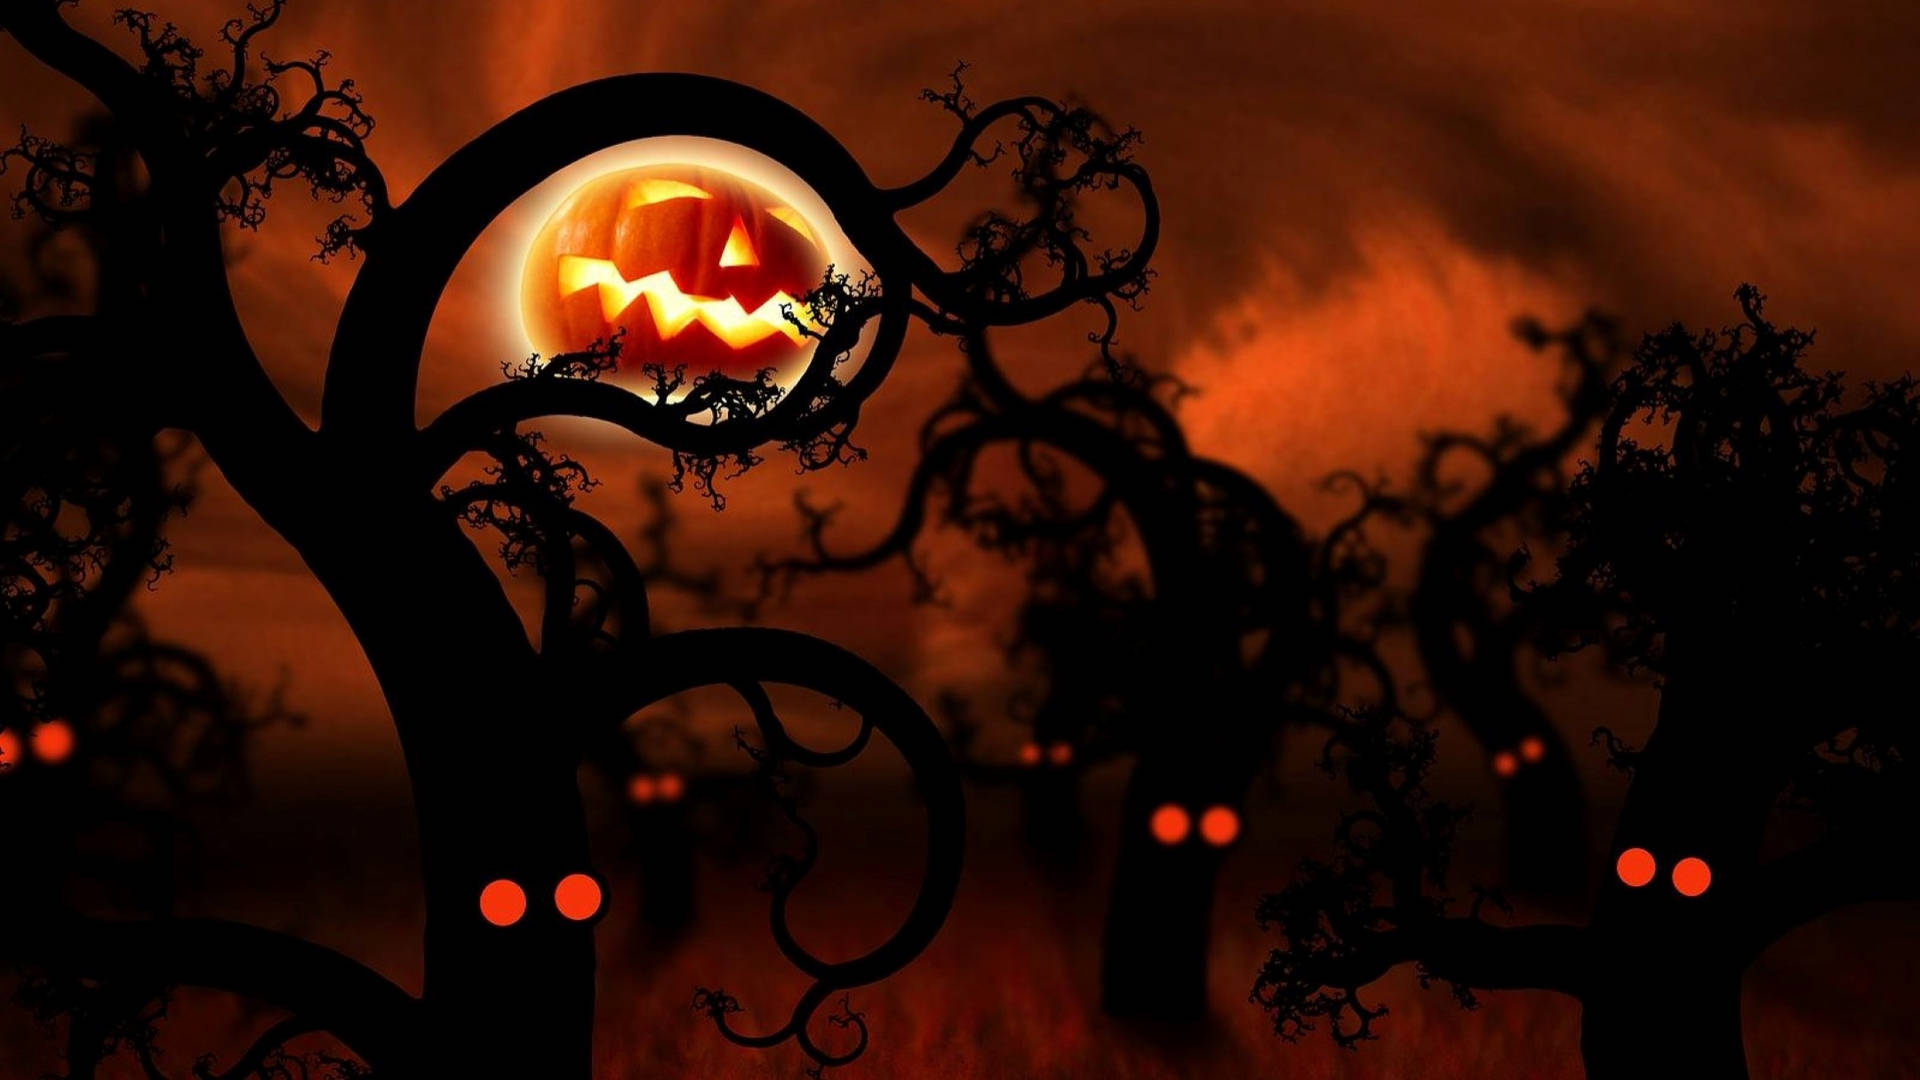 Dark Woods Halloween Aesthetic Art